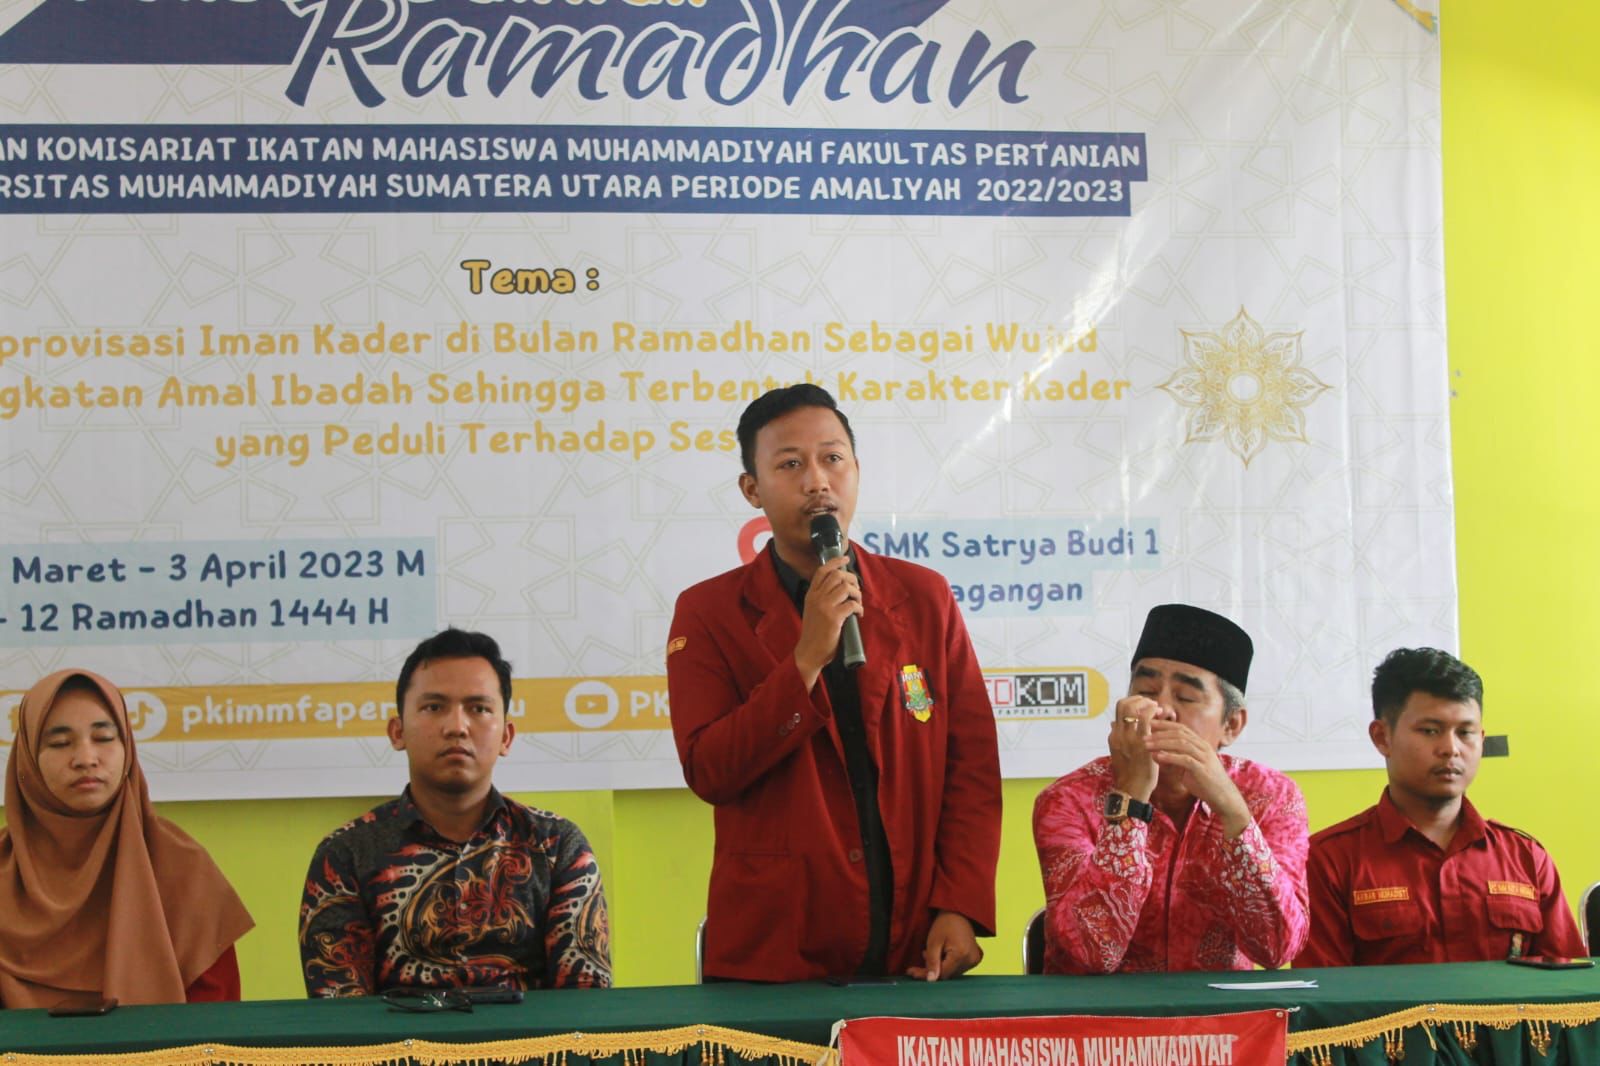 PDR Di Simalungun, PK IMM FAPERTA UMSU Berkoloborasi Dengan SMK Swata Satrya Budi Perdagangan